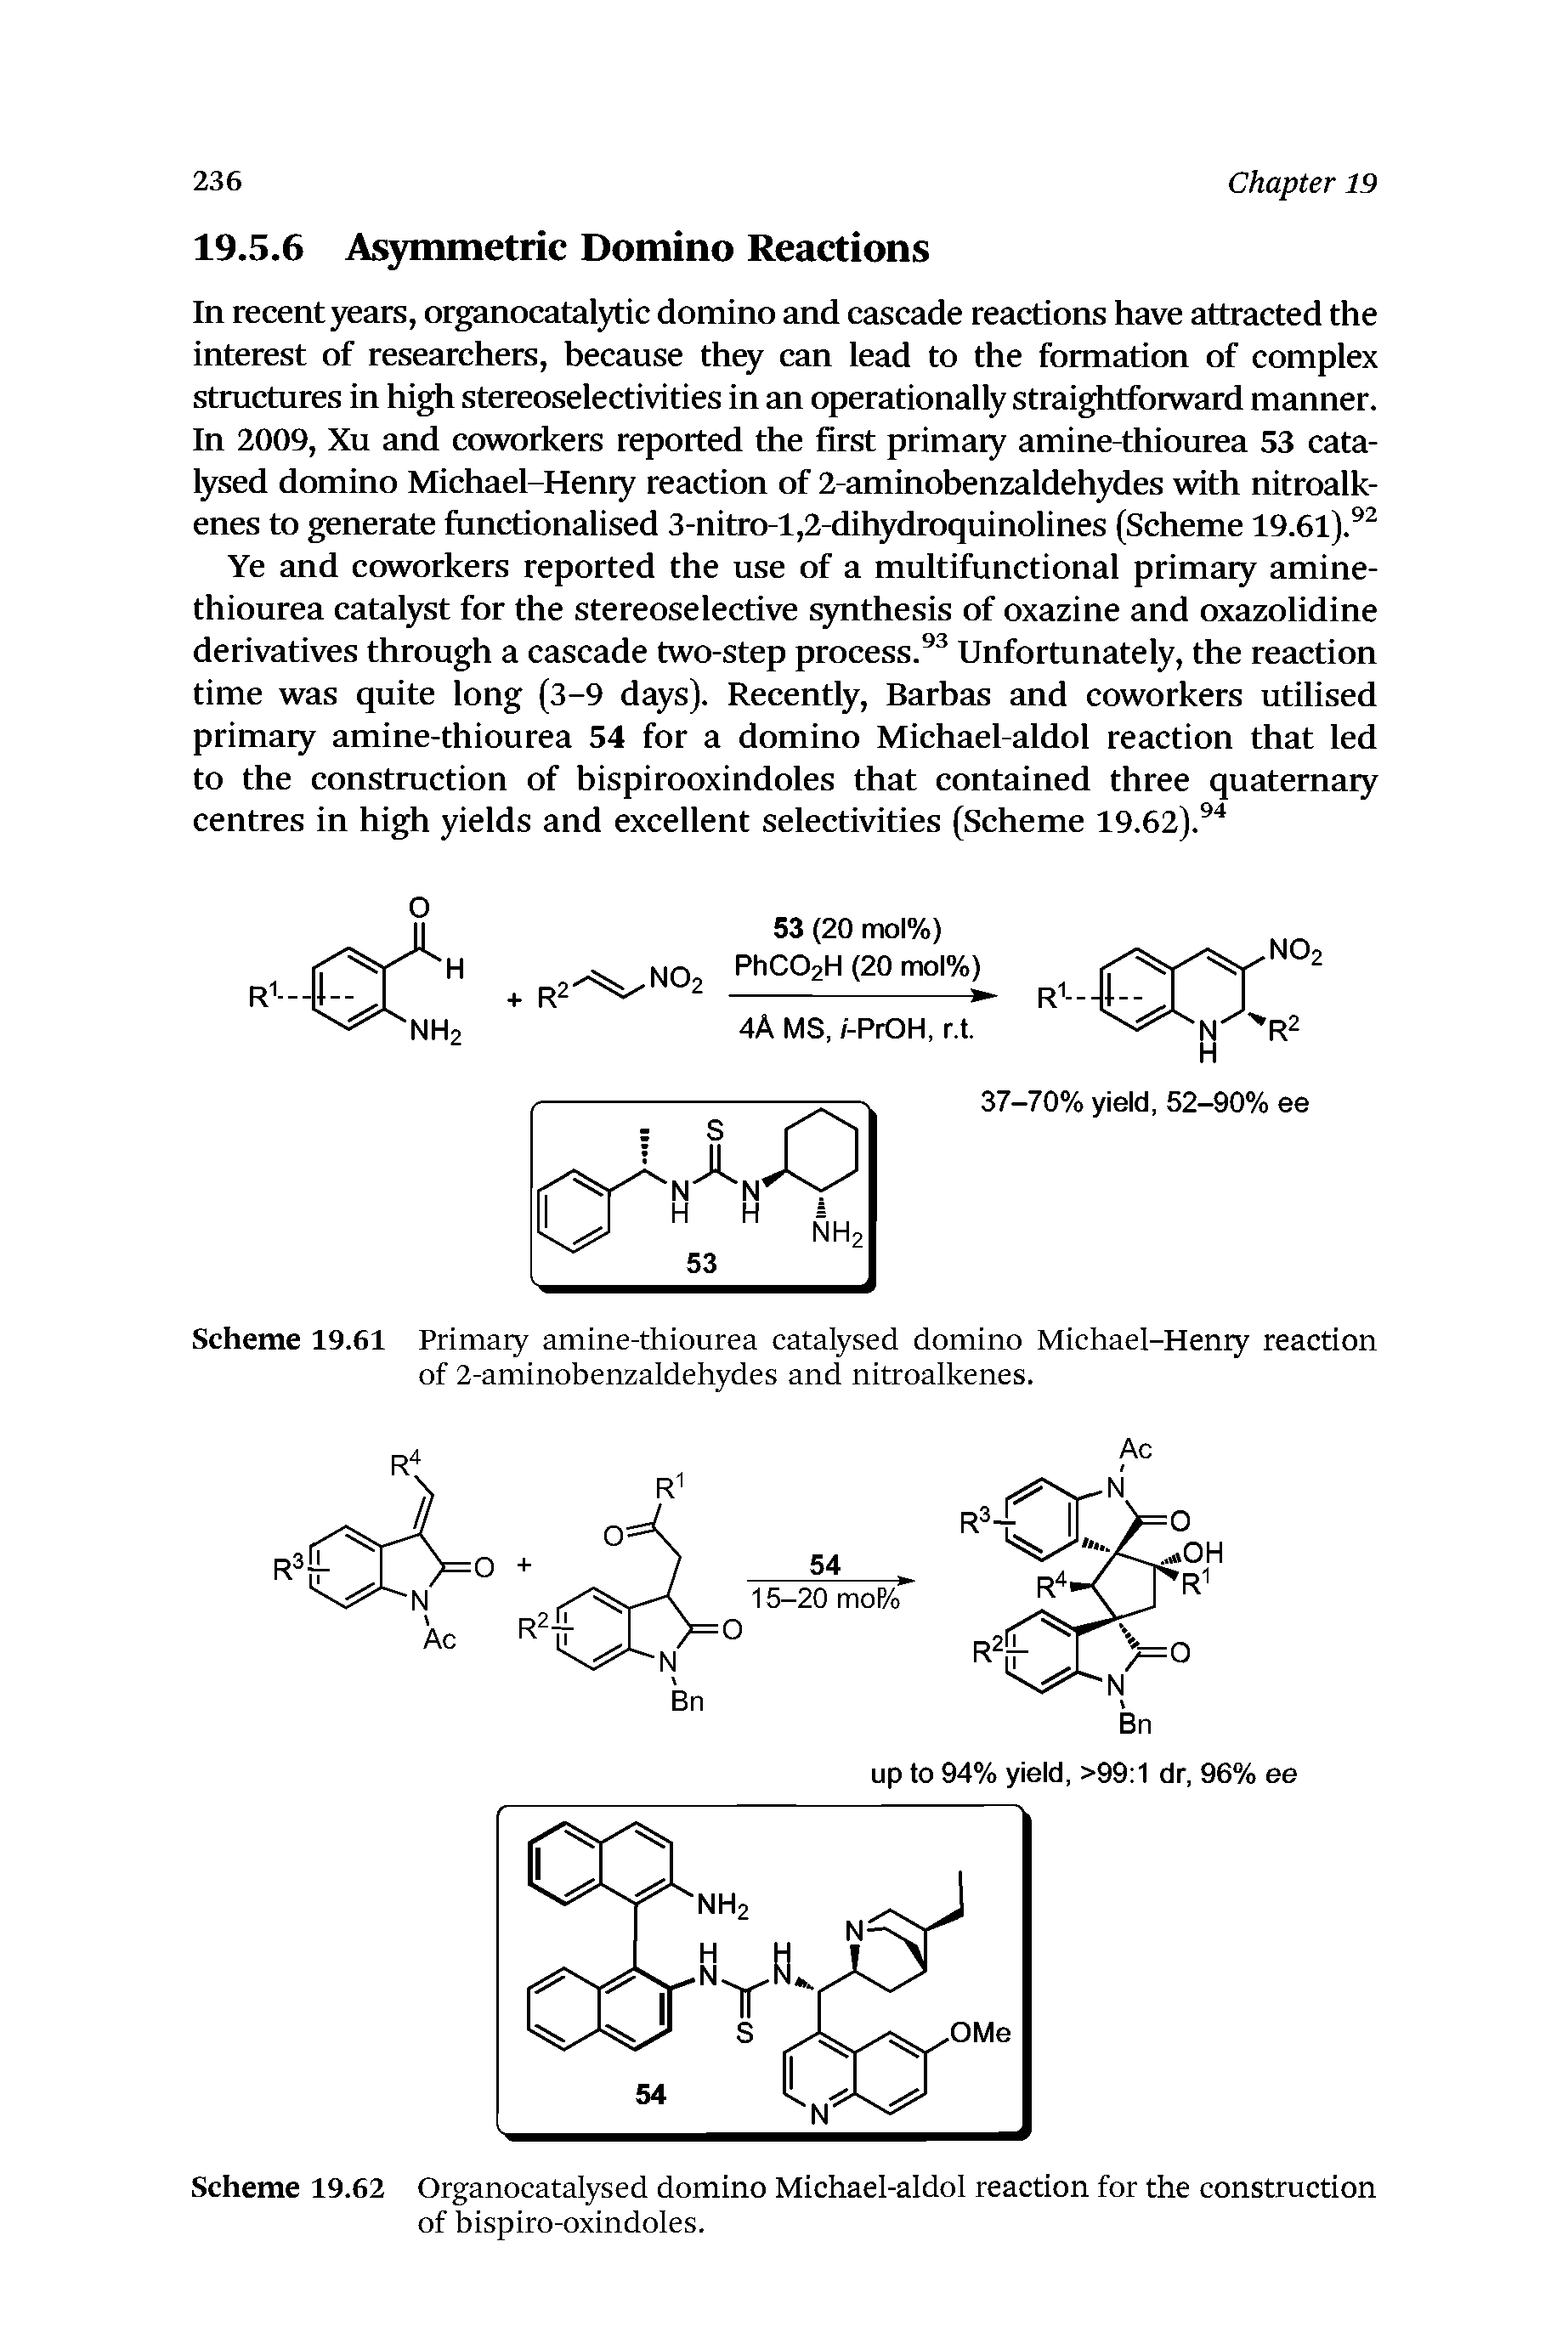 Scheme 19.61 Primaiy amine-thiourea catalysed domino Michael-Heniy reaction of 2-aminobenzaldehydes and nitroalkenes.